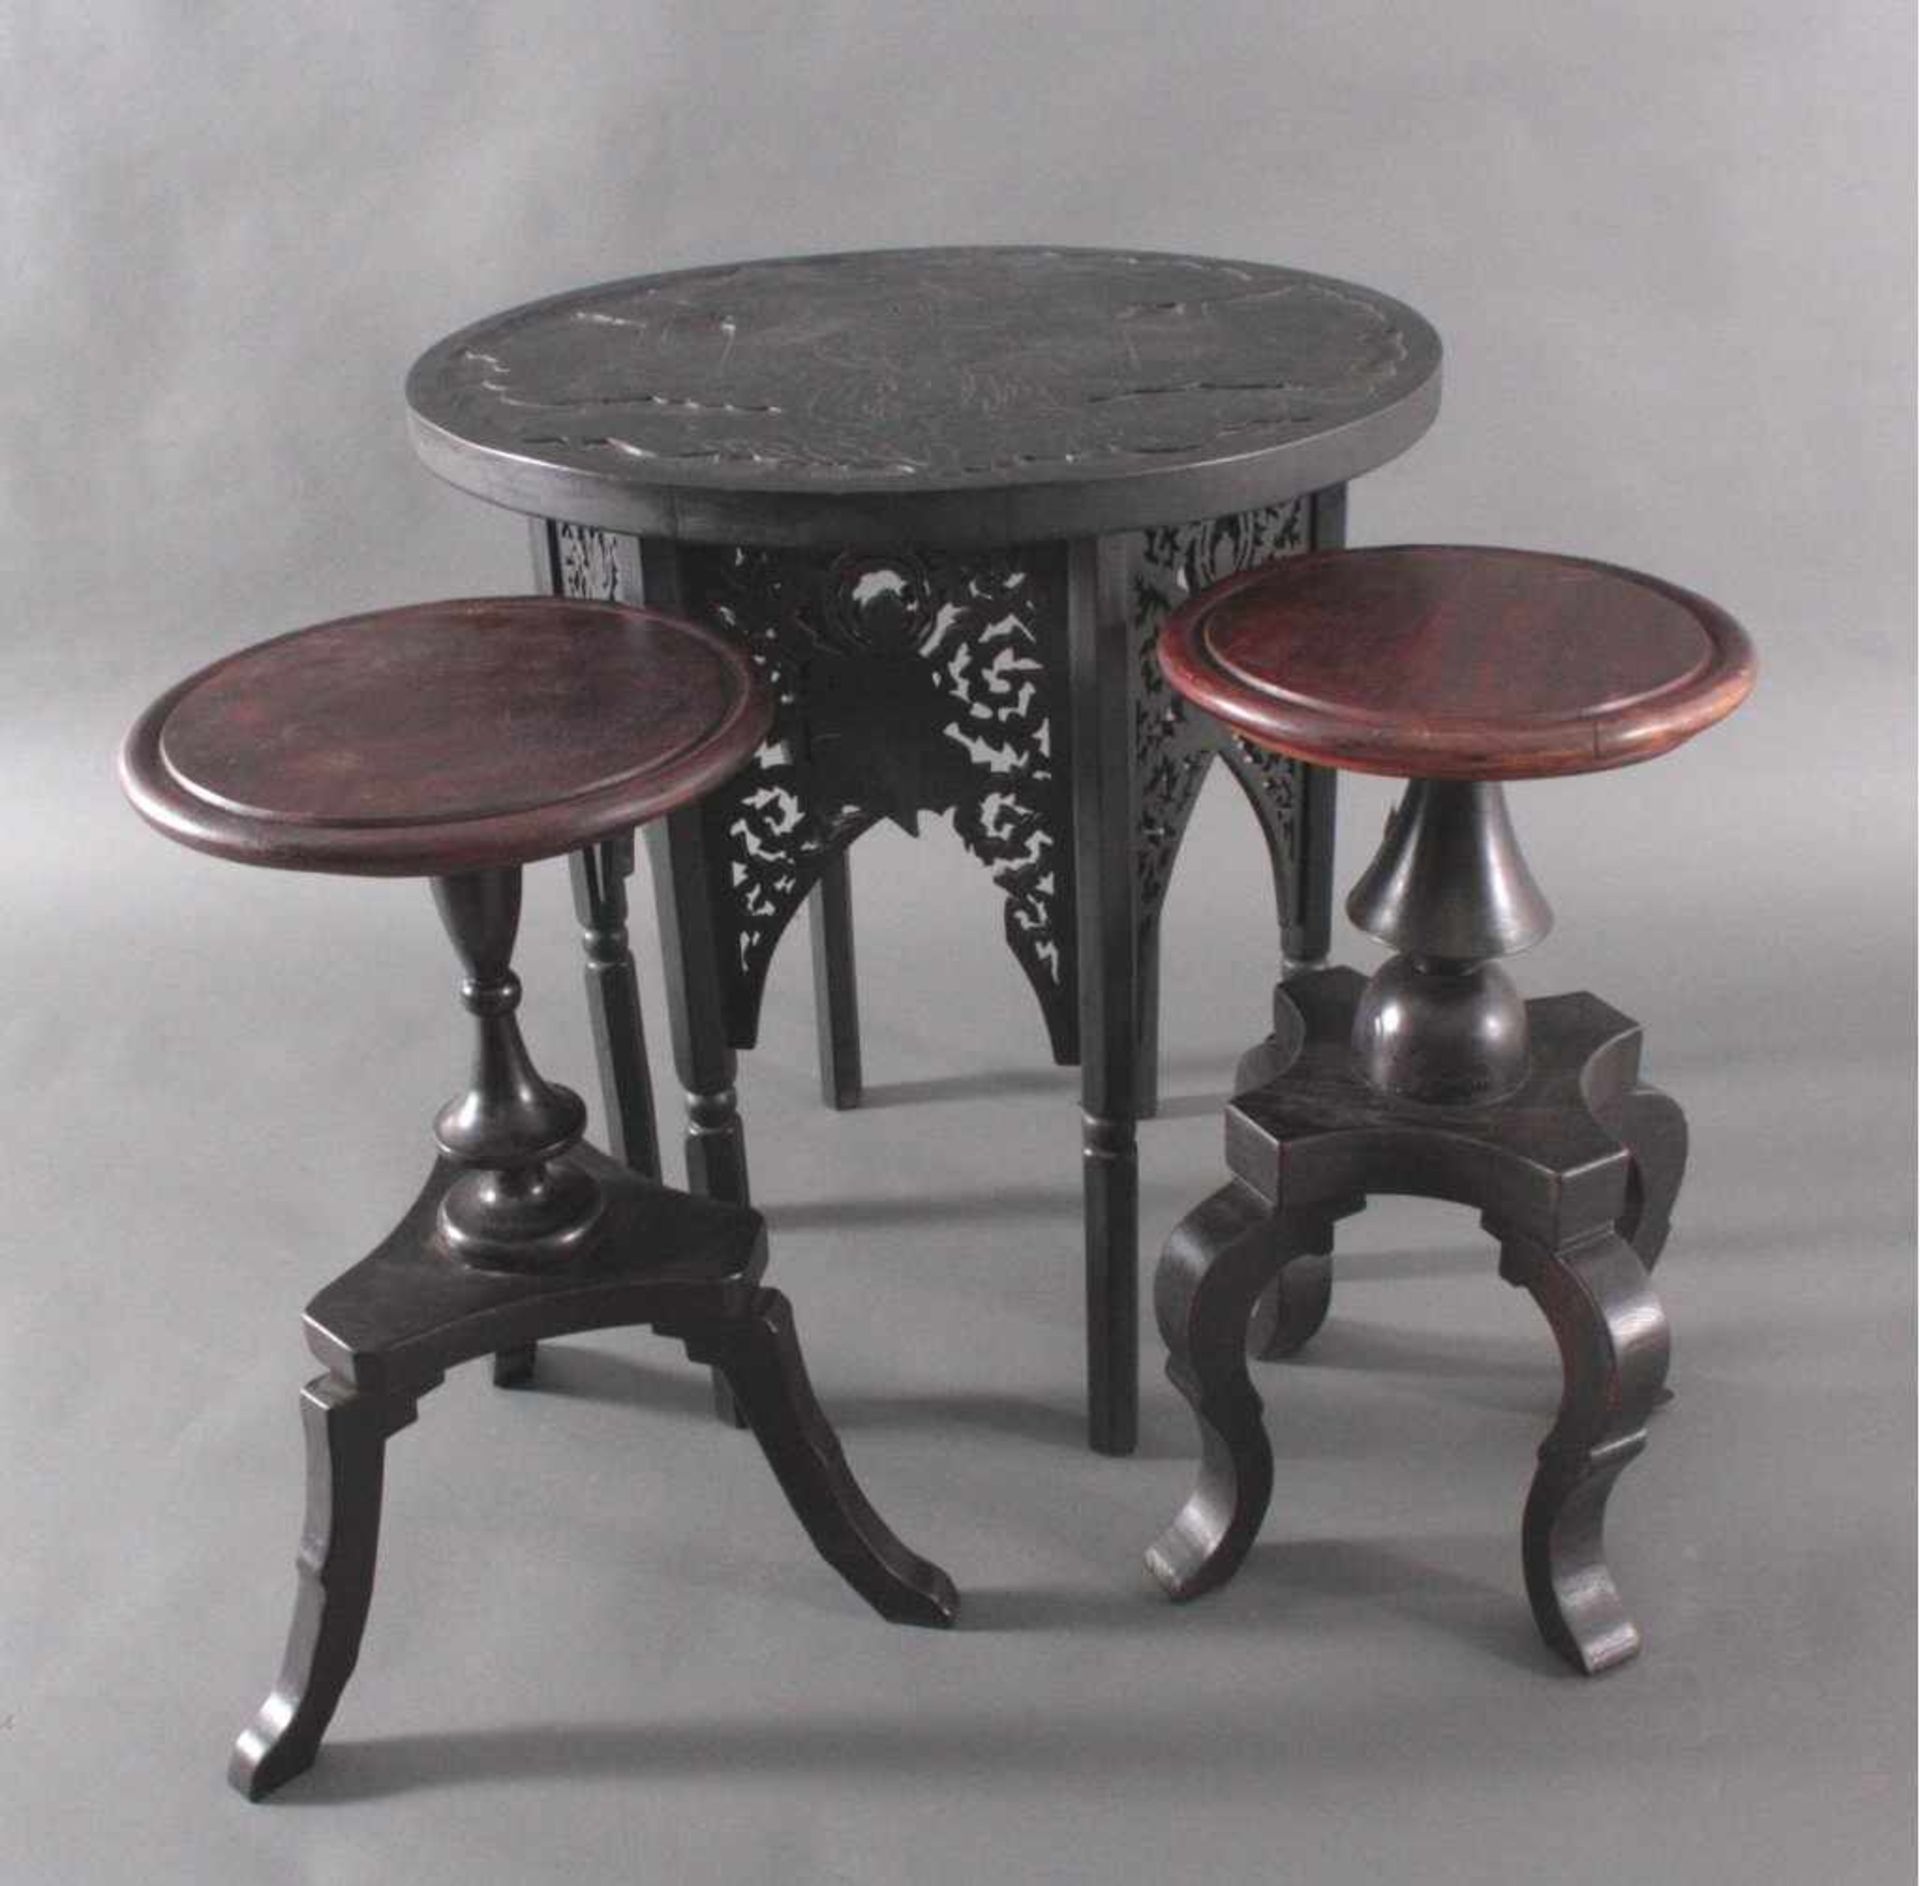 Kleiner Beistelltisch mit 2 Stühlen, ChinaMassiv, dunkles Holz, Runde Platte mitgeschnitztem